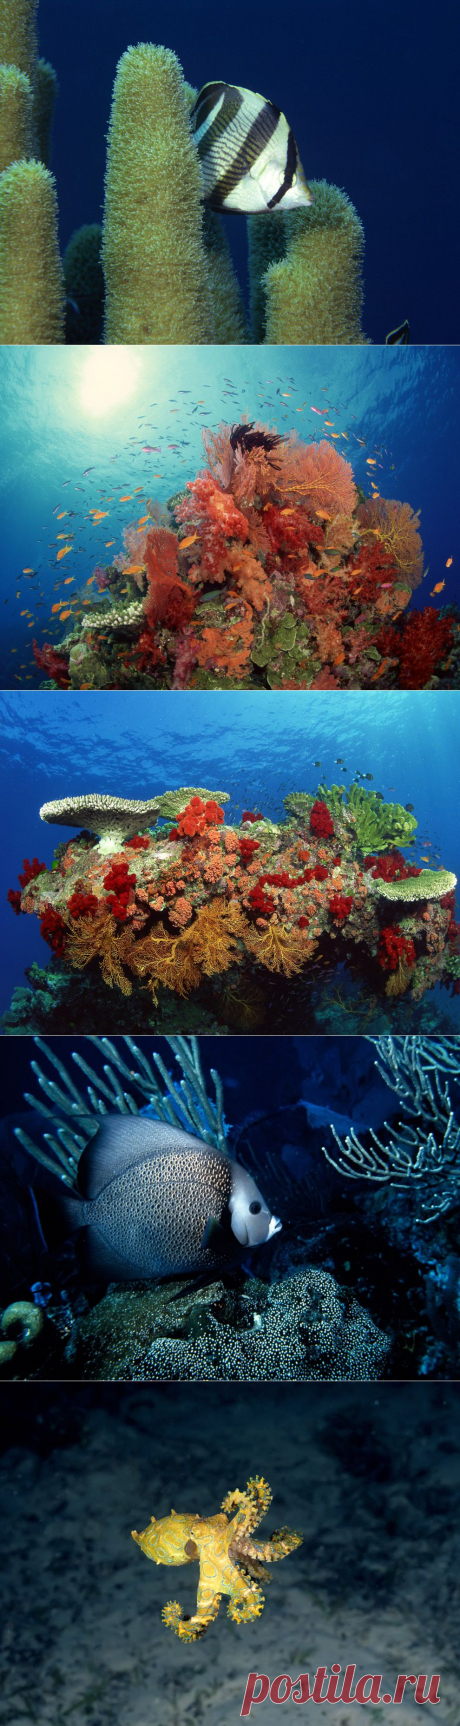 Обои для рабочего стола Красоты подводного мира : НОВОСТИ В ФОТОГРАФИЯХ